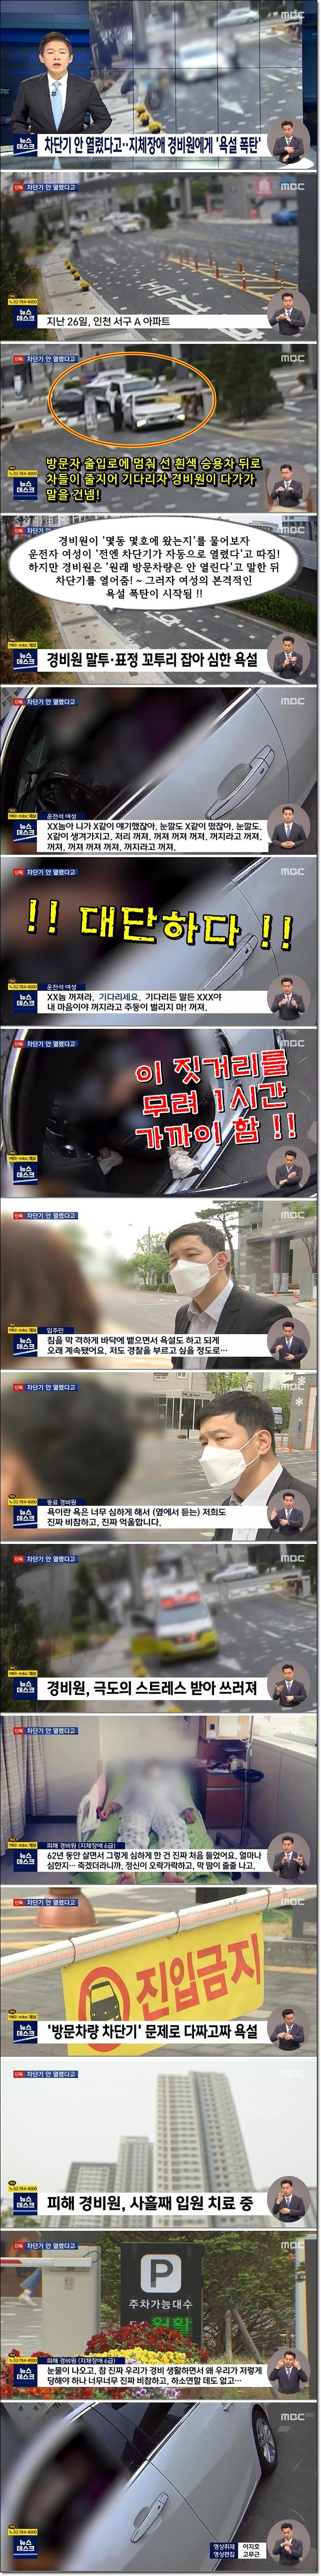 [뉴스데스크] 인천 아파트 욕설폭탄 갑질녀 